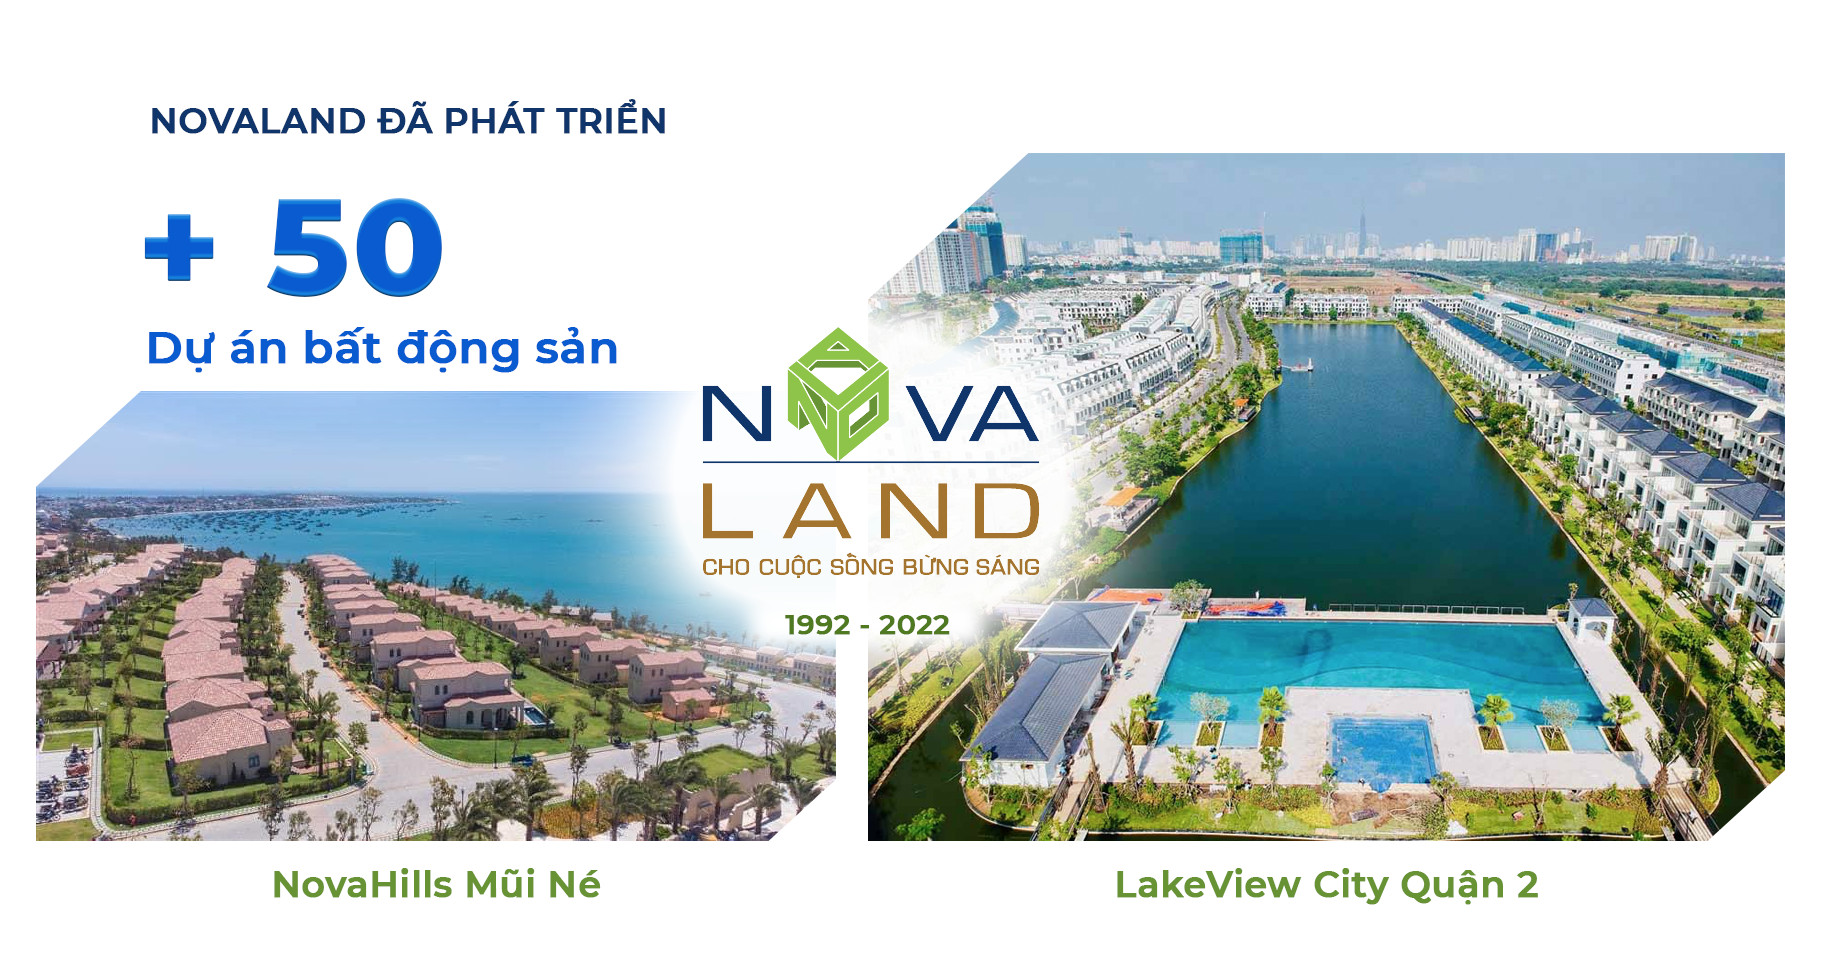 Novaland phát triển hơn 50 dự án - Có nên đầu tư vào Aqua City